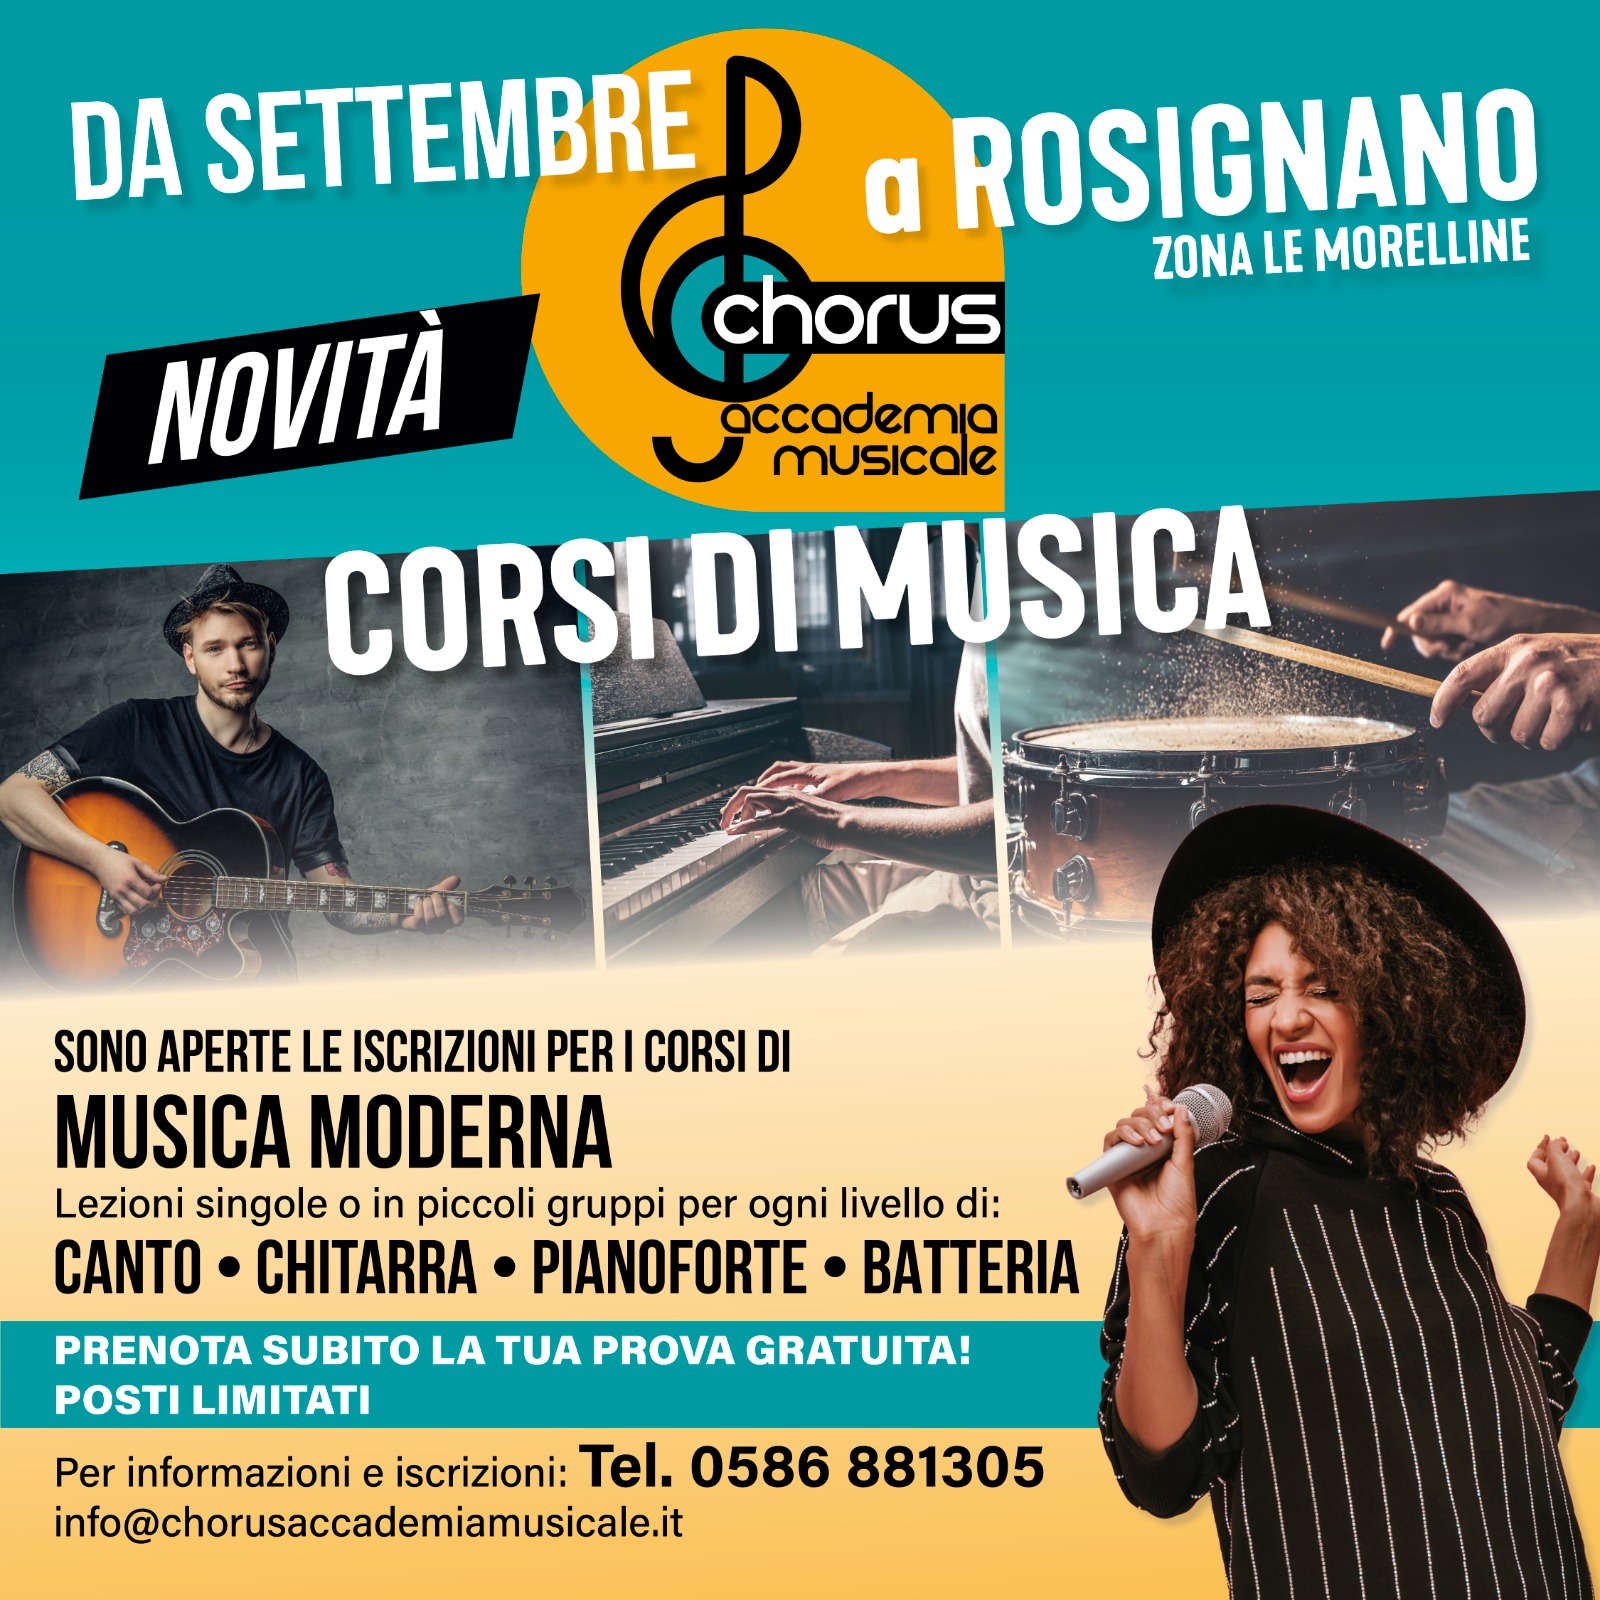 Dal 1° settembre i corsi di musica Chorus anche a Rosignano !!!